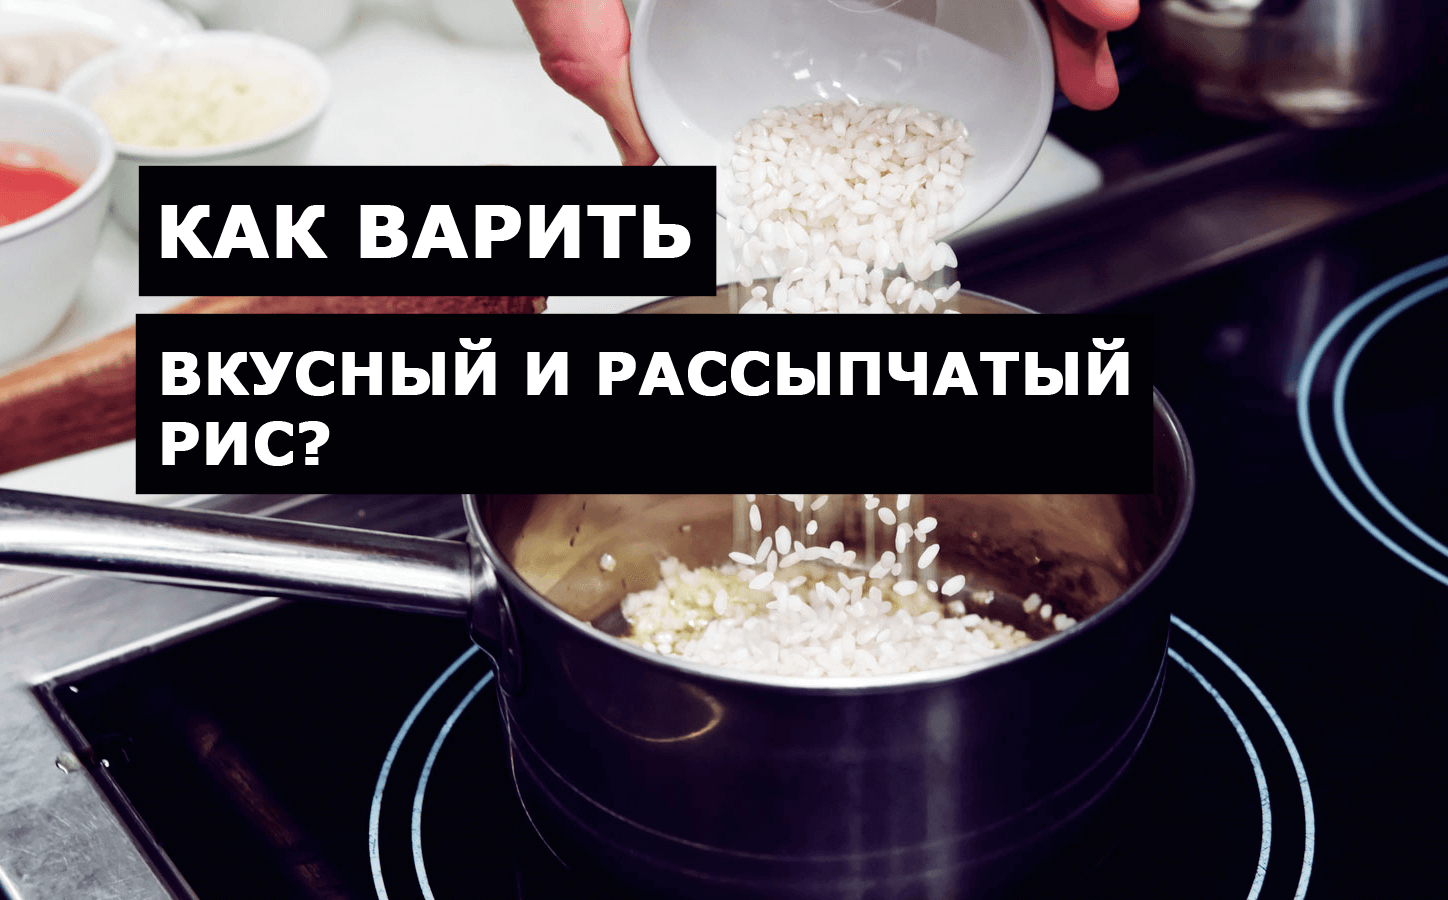 Как варить вкусный и рассыпчатый рис?